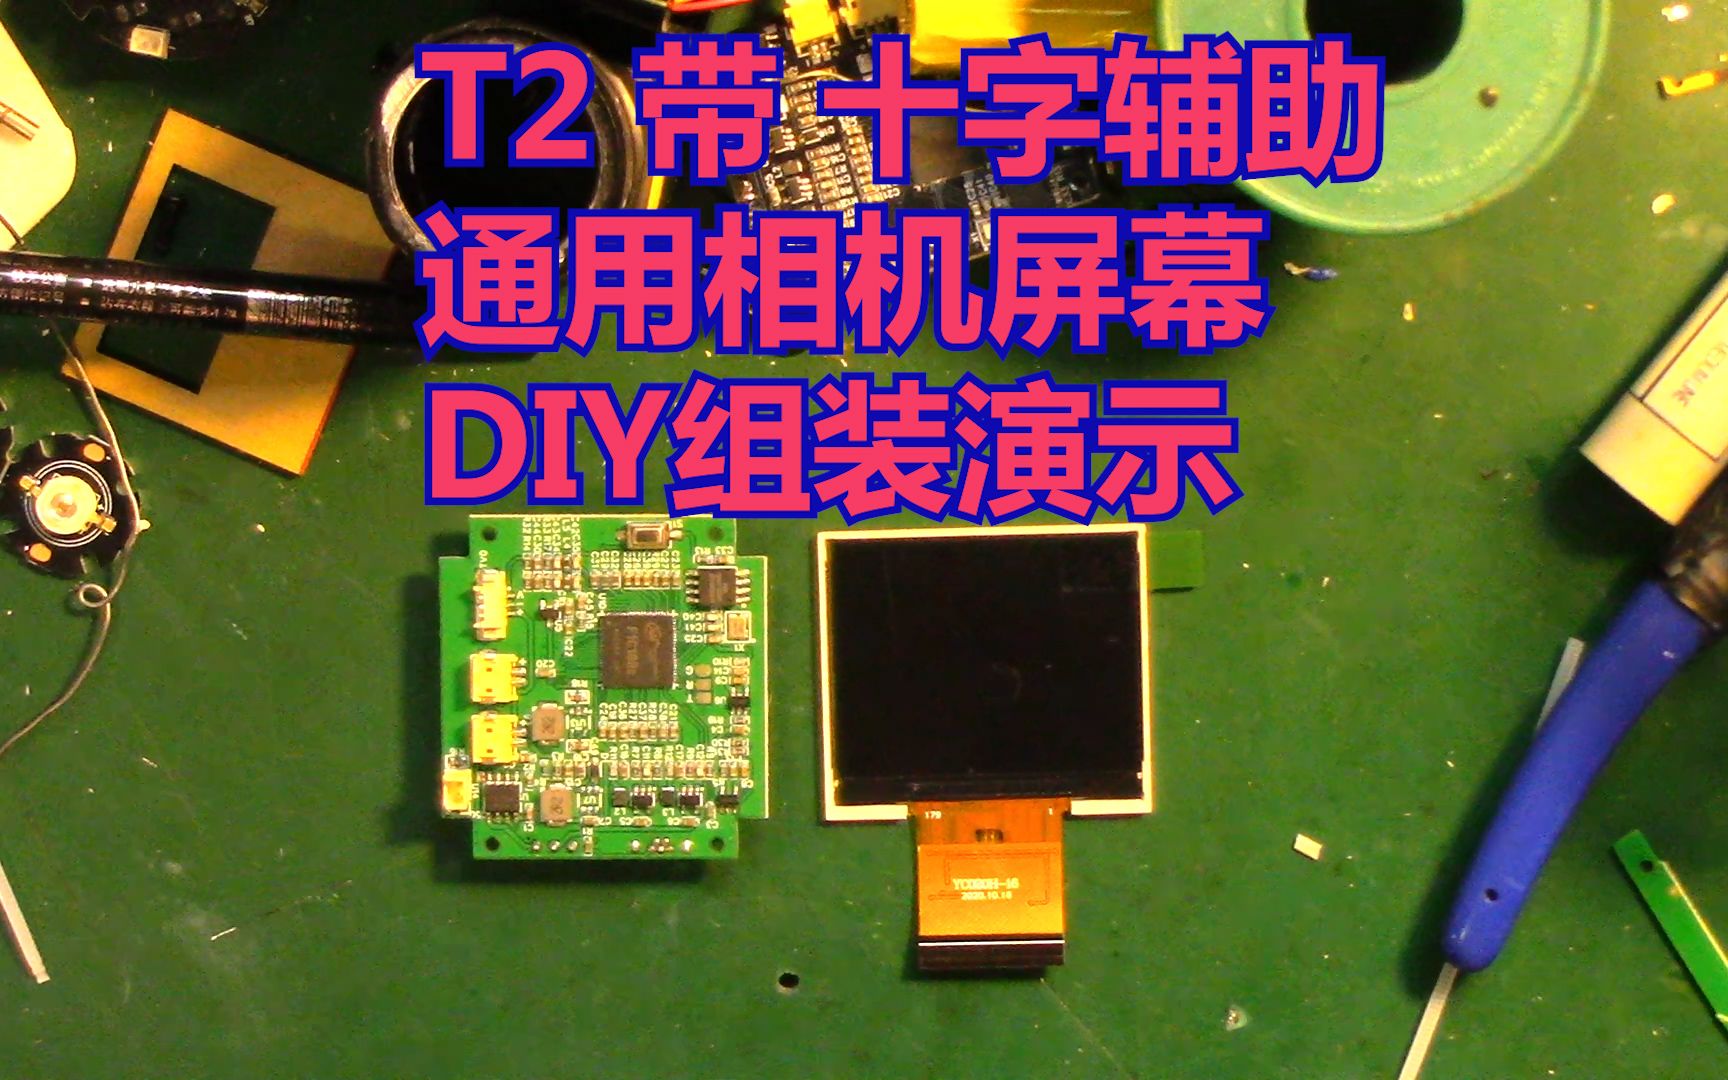 工业版T2热成像 夜视仪 相机显示屏，带十字屏幕加驱动板 DIY组装演示 也可以作为单反监视器使用 AV模拟信号输入